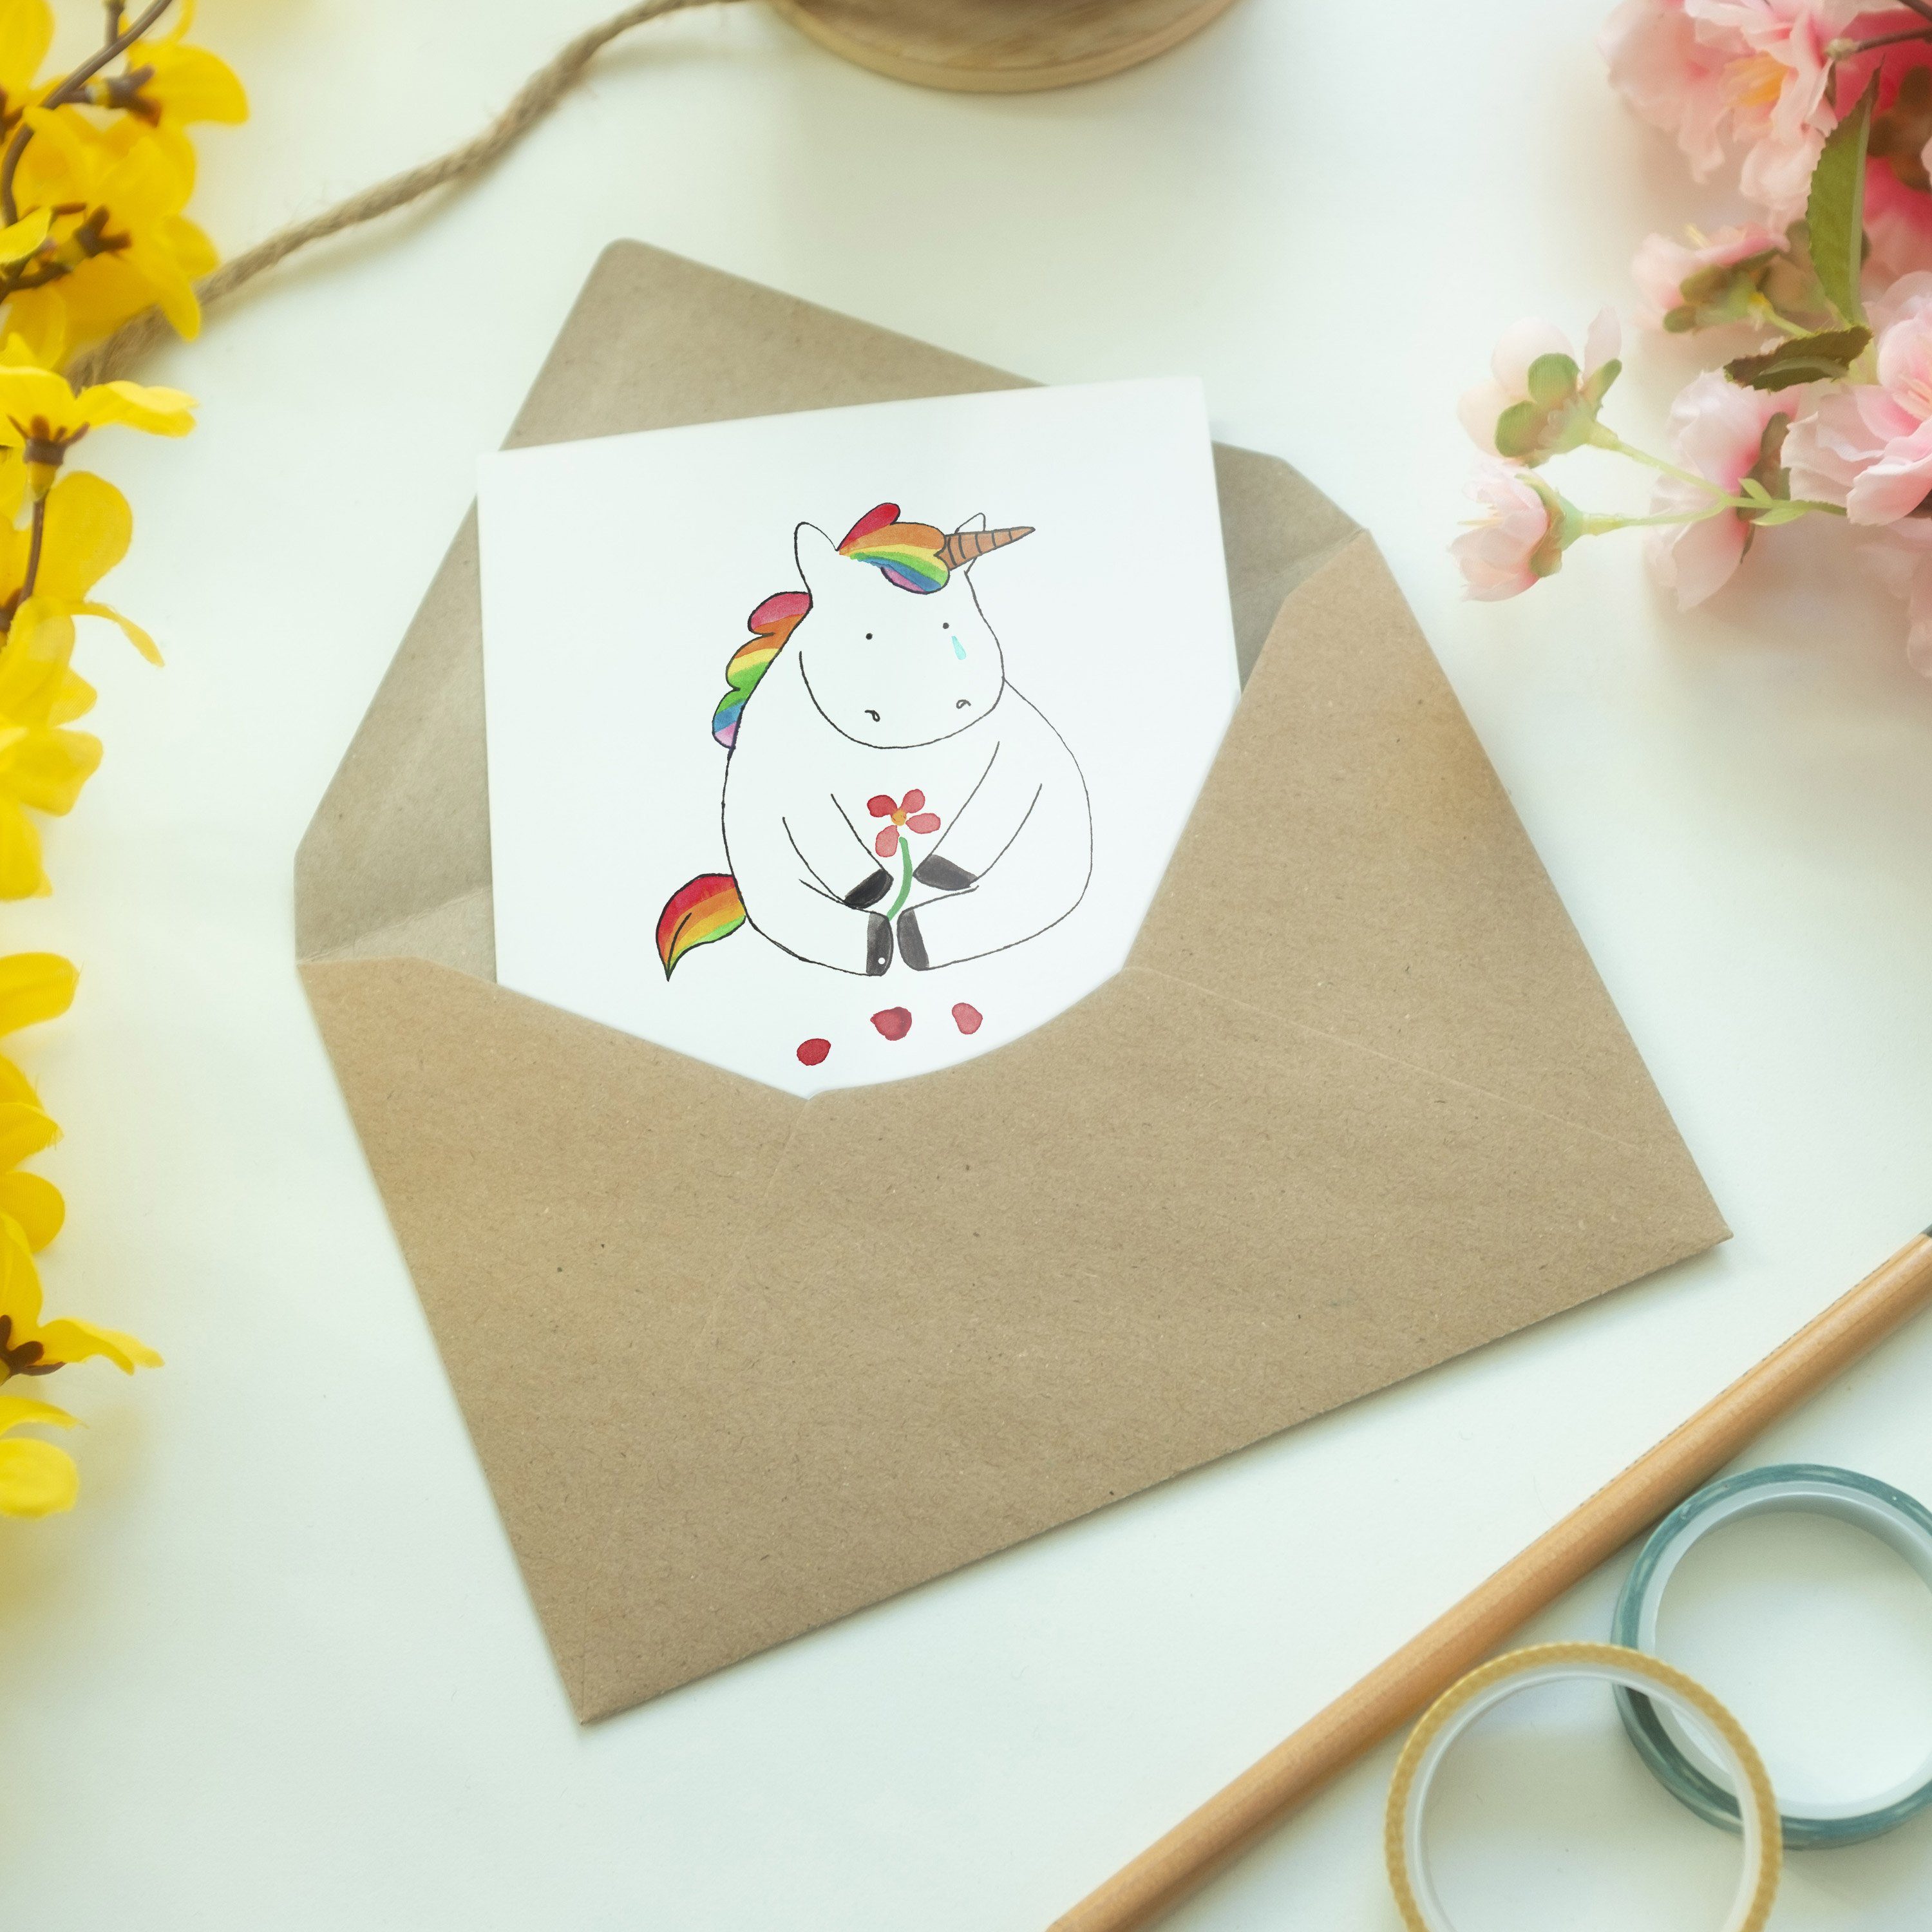 Mr. & Mrs. Grußkarte Glückwunsc Karte, Einhorn - Weiß Traurig Geschenk, - Einladungskarte, Panda